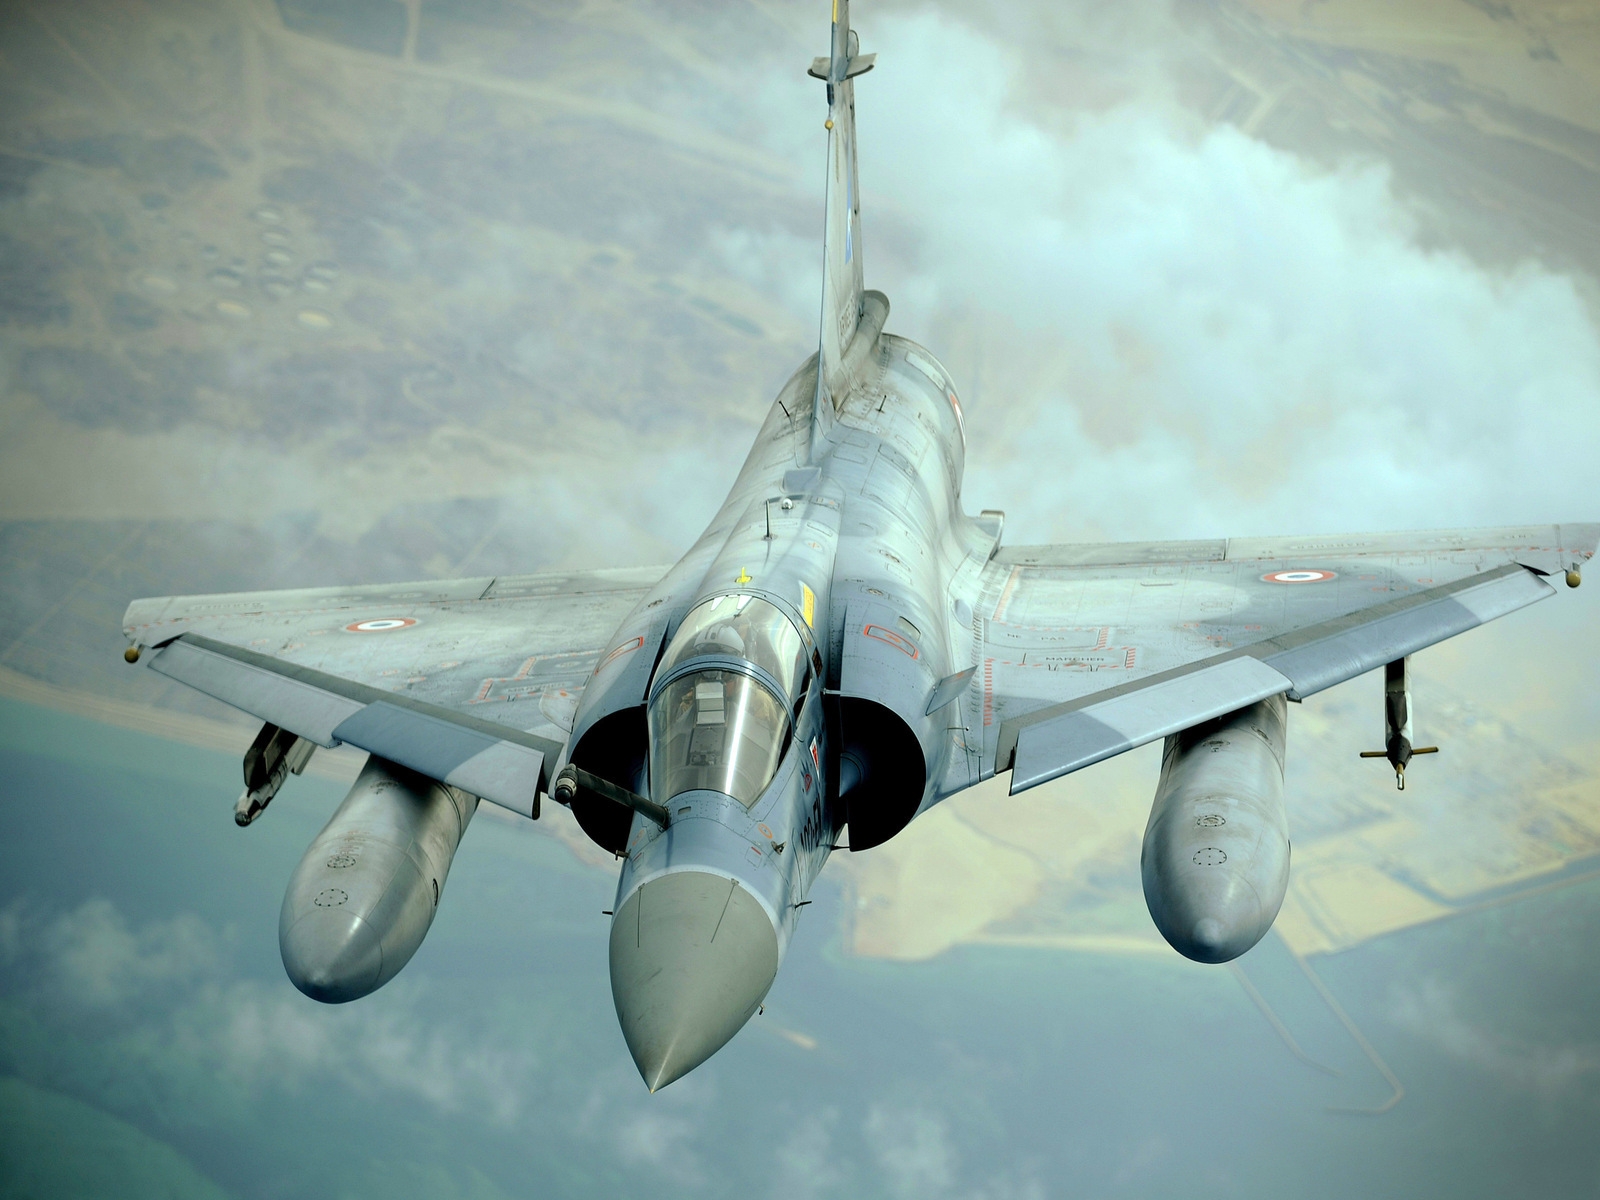 Dassault Mirage 2000 for 1600 x 1200 resolution